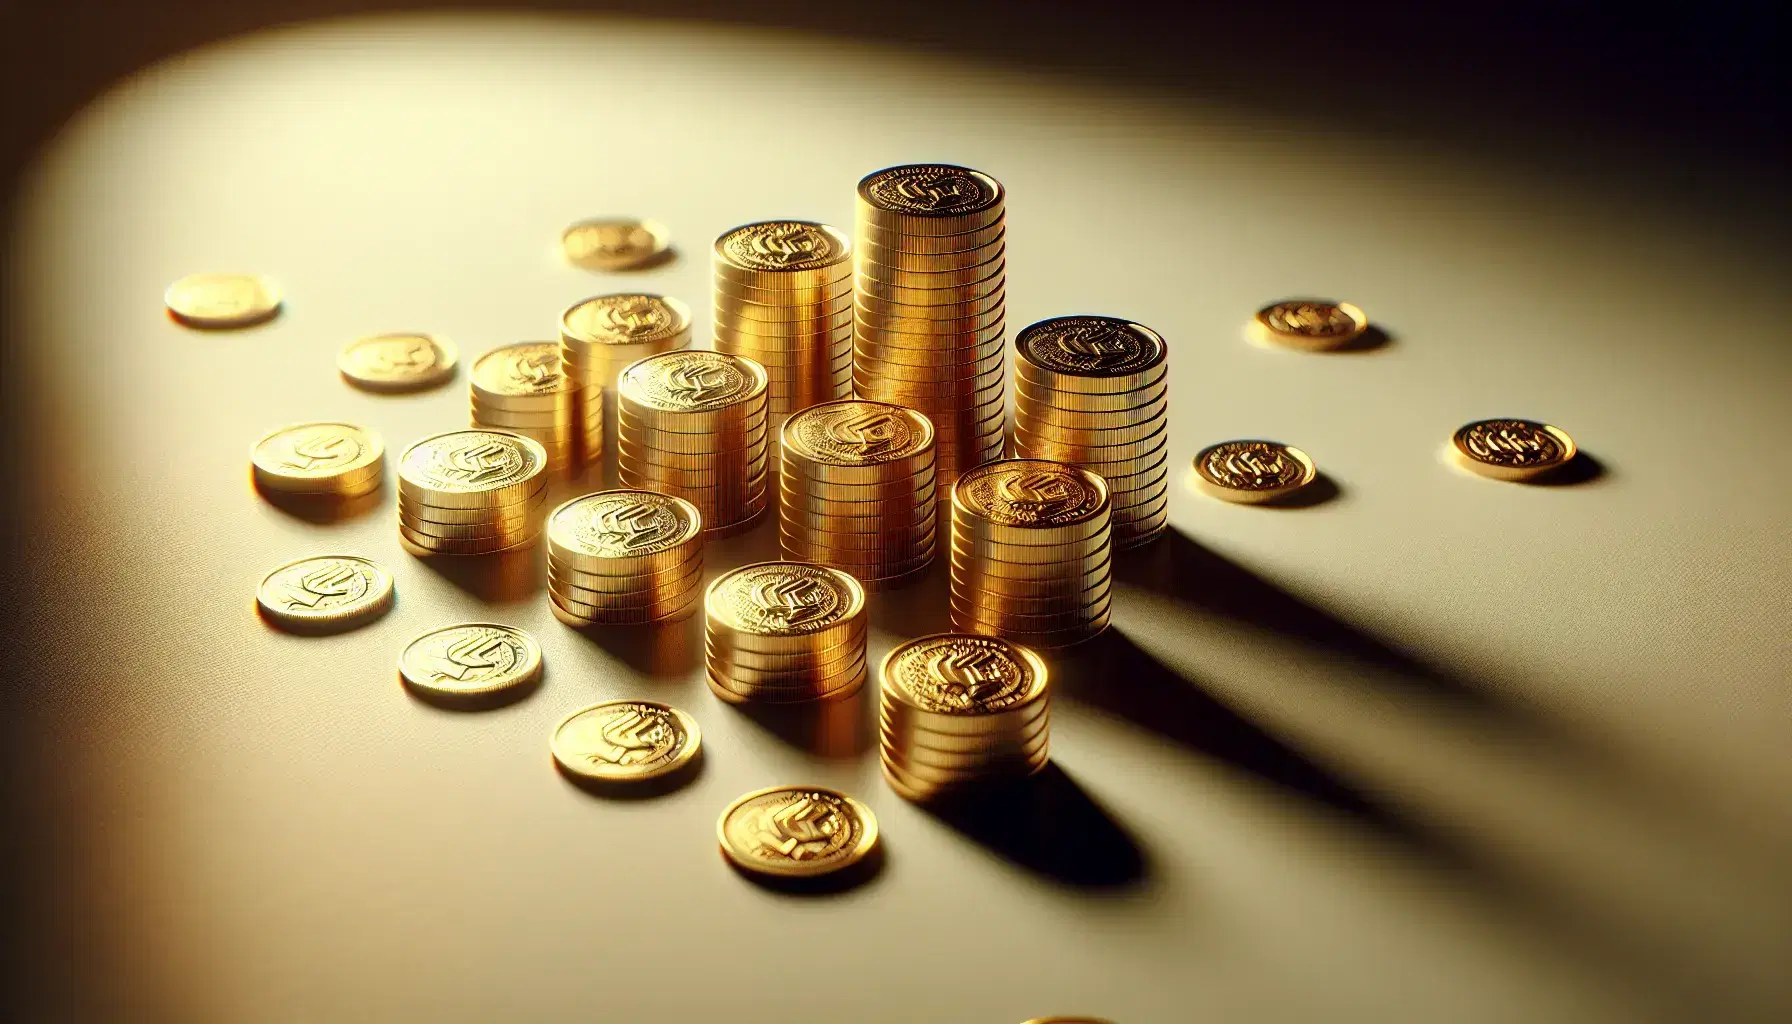 Monedas de oro brillantes en patrón rectangular con una torre inestable en el centro sobre superficie clara.